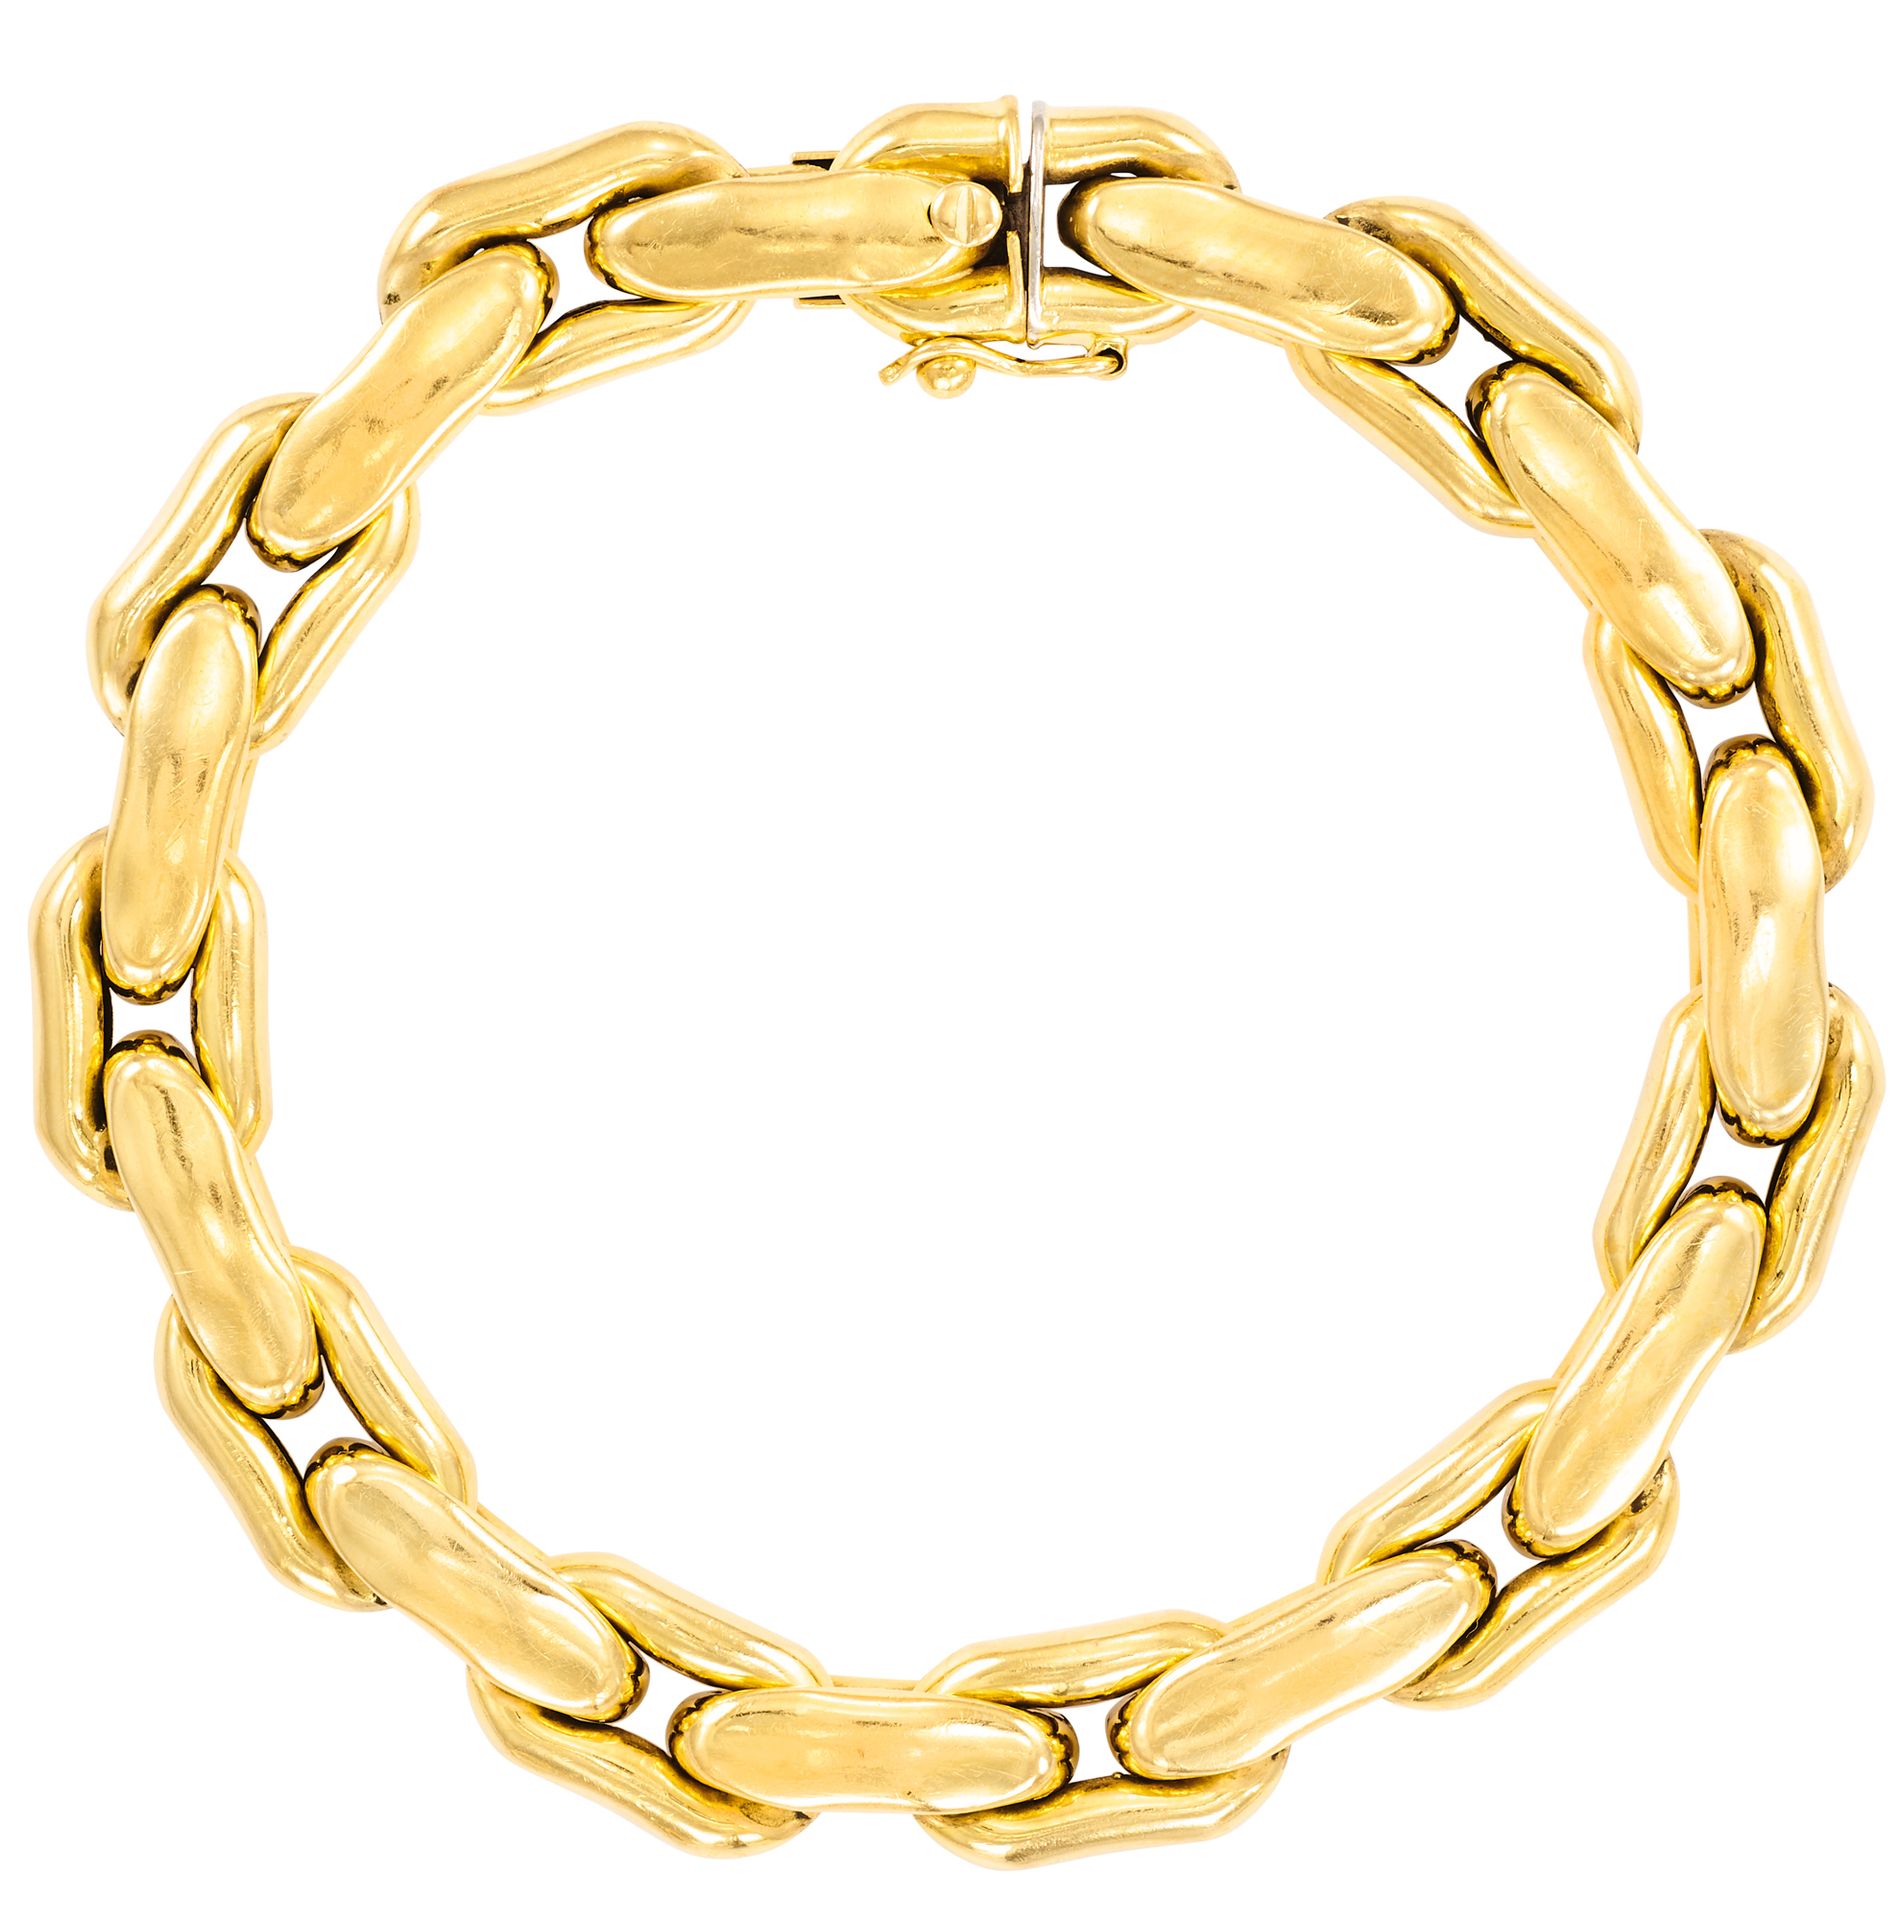 Bracelet catena a fagiolo allungata in oro giallo
L: 19 cm - L: 0,8 cm
Peso: 26,&hellip;